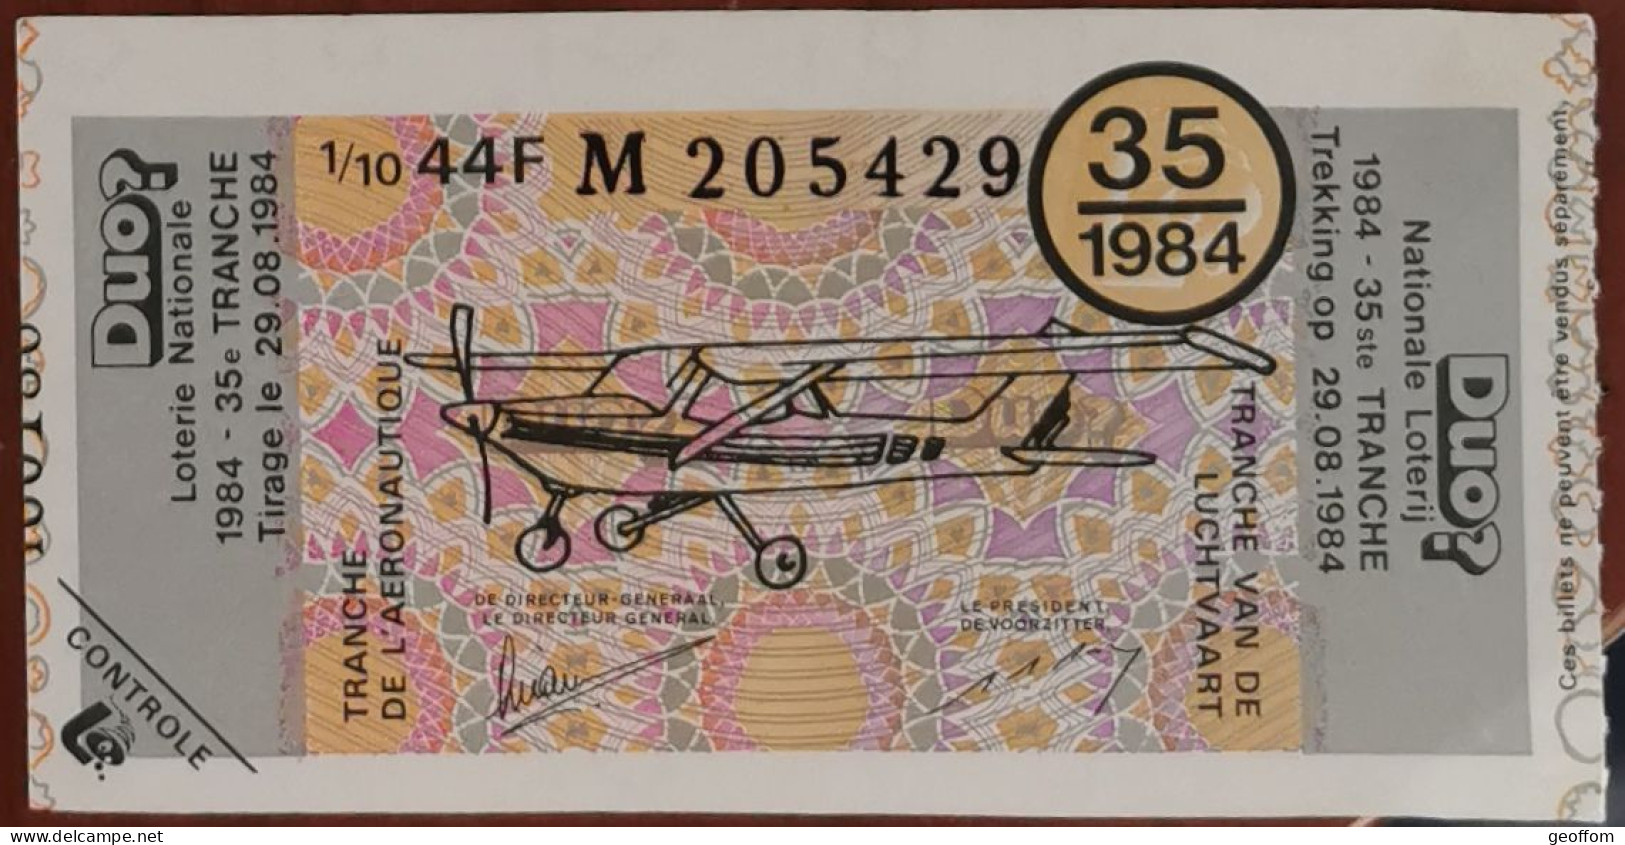 Billet De Loterie Nationale Belgique 1984 35e Tranche De L'Aéronautique - 29-8-1984 - Billetes De Lotería